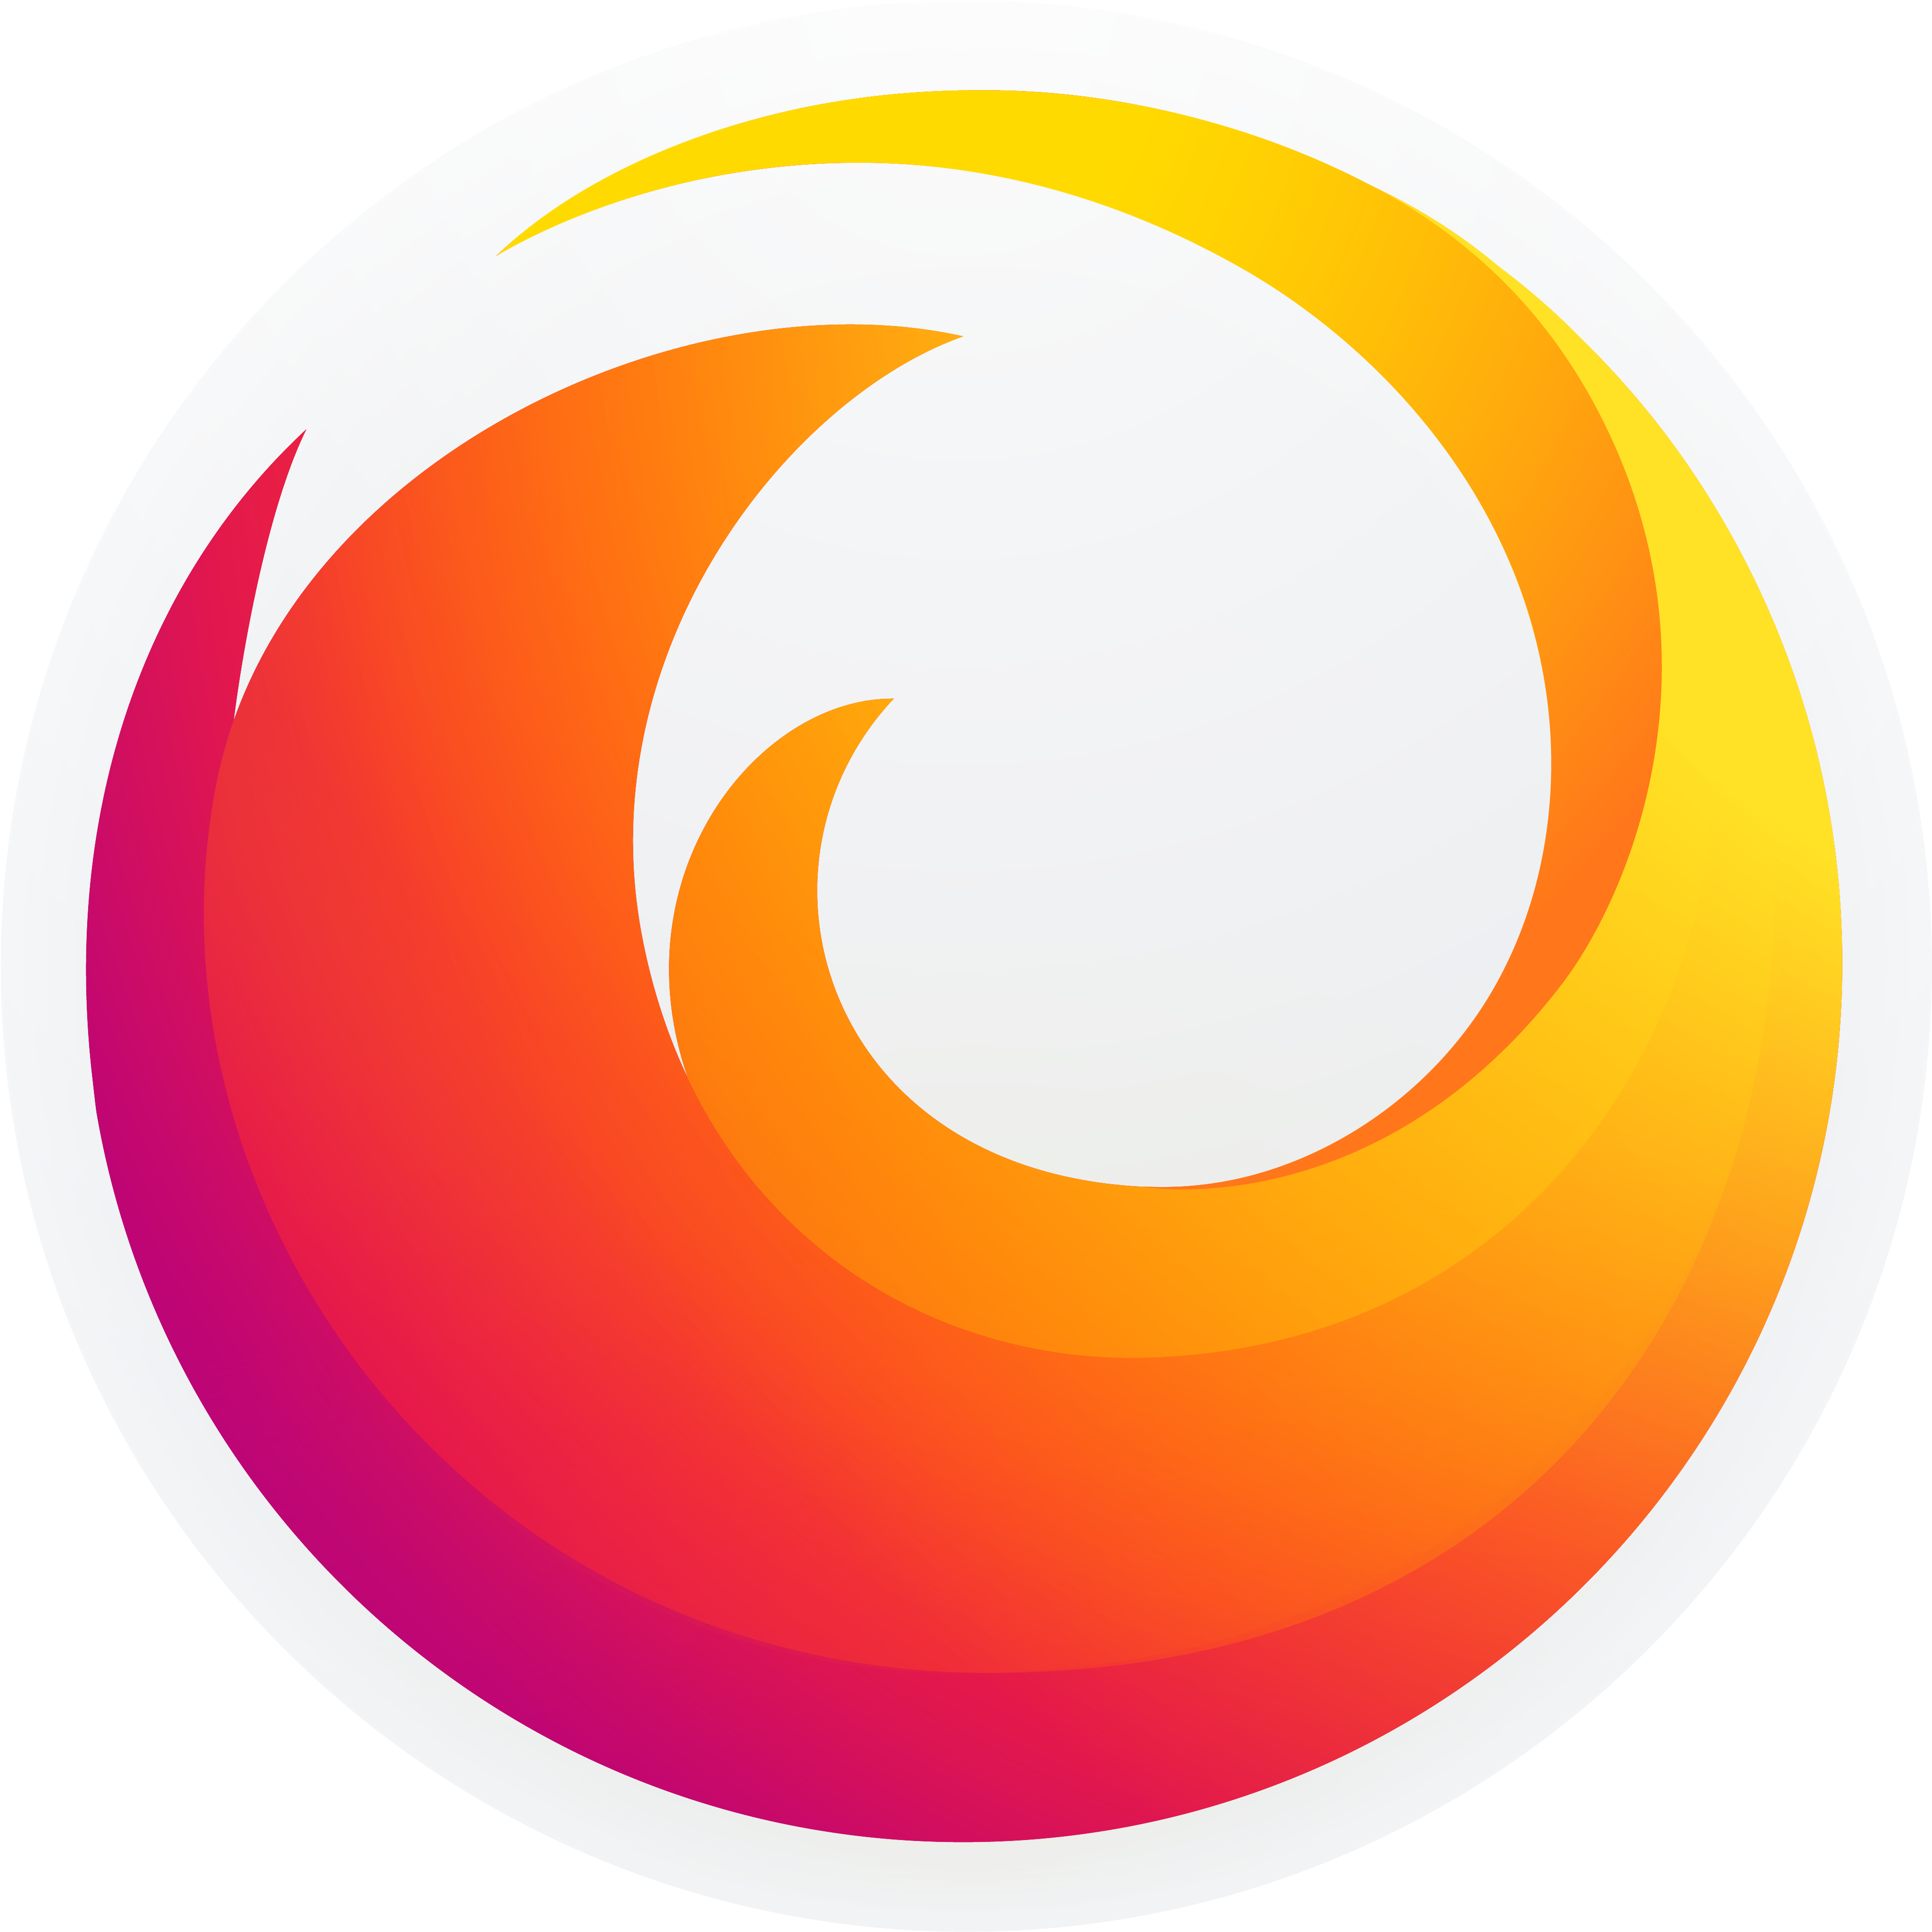 A Logo Of A Swirly Circle